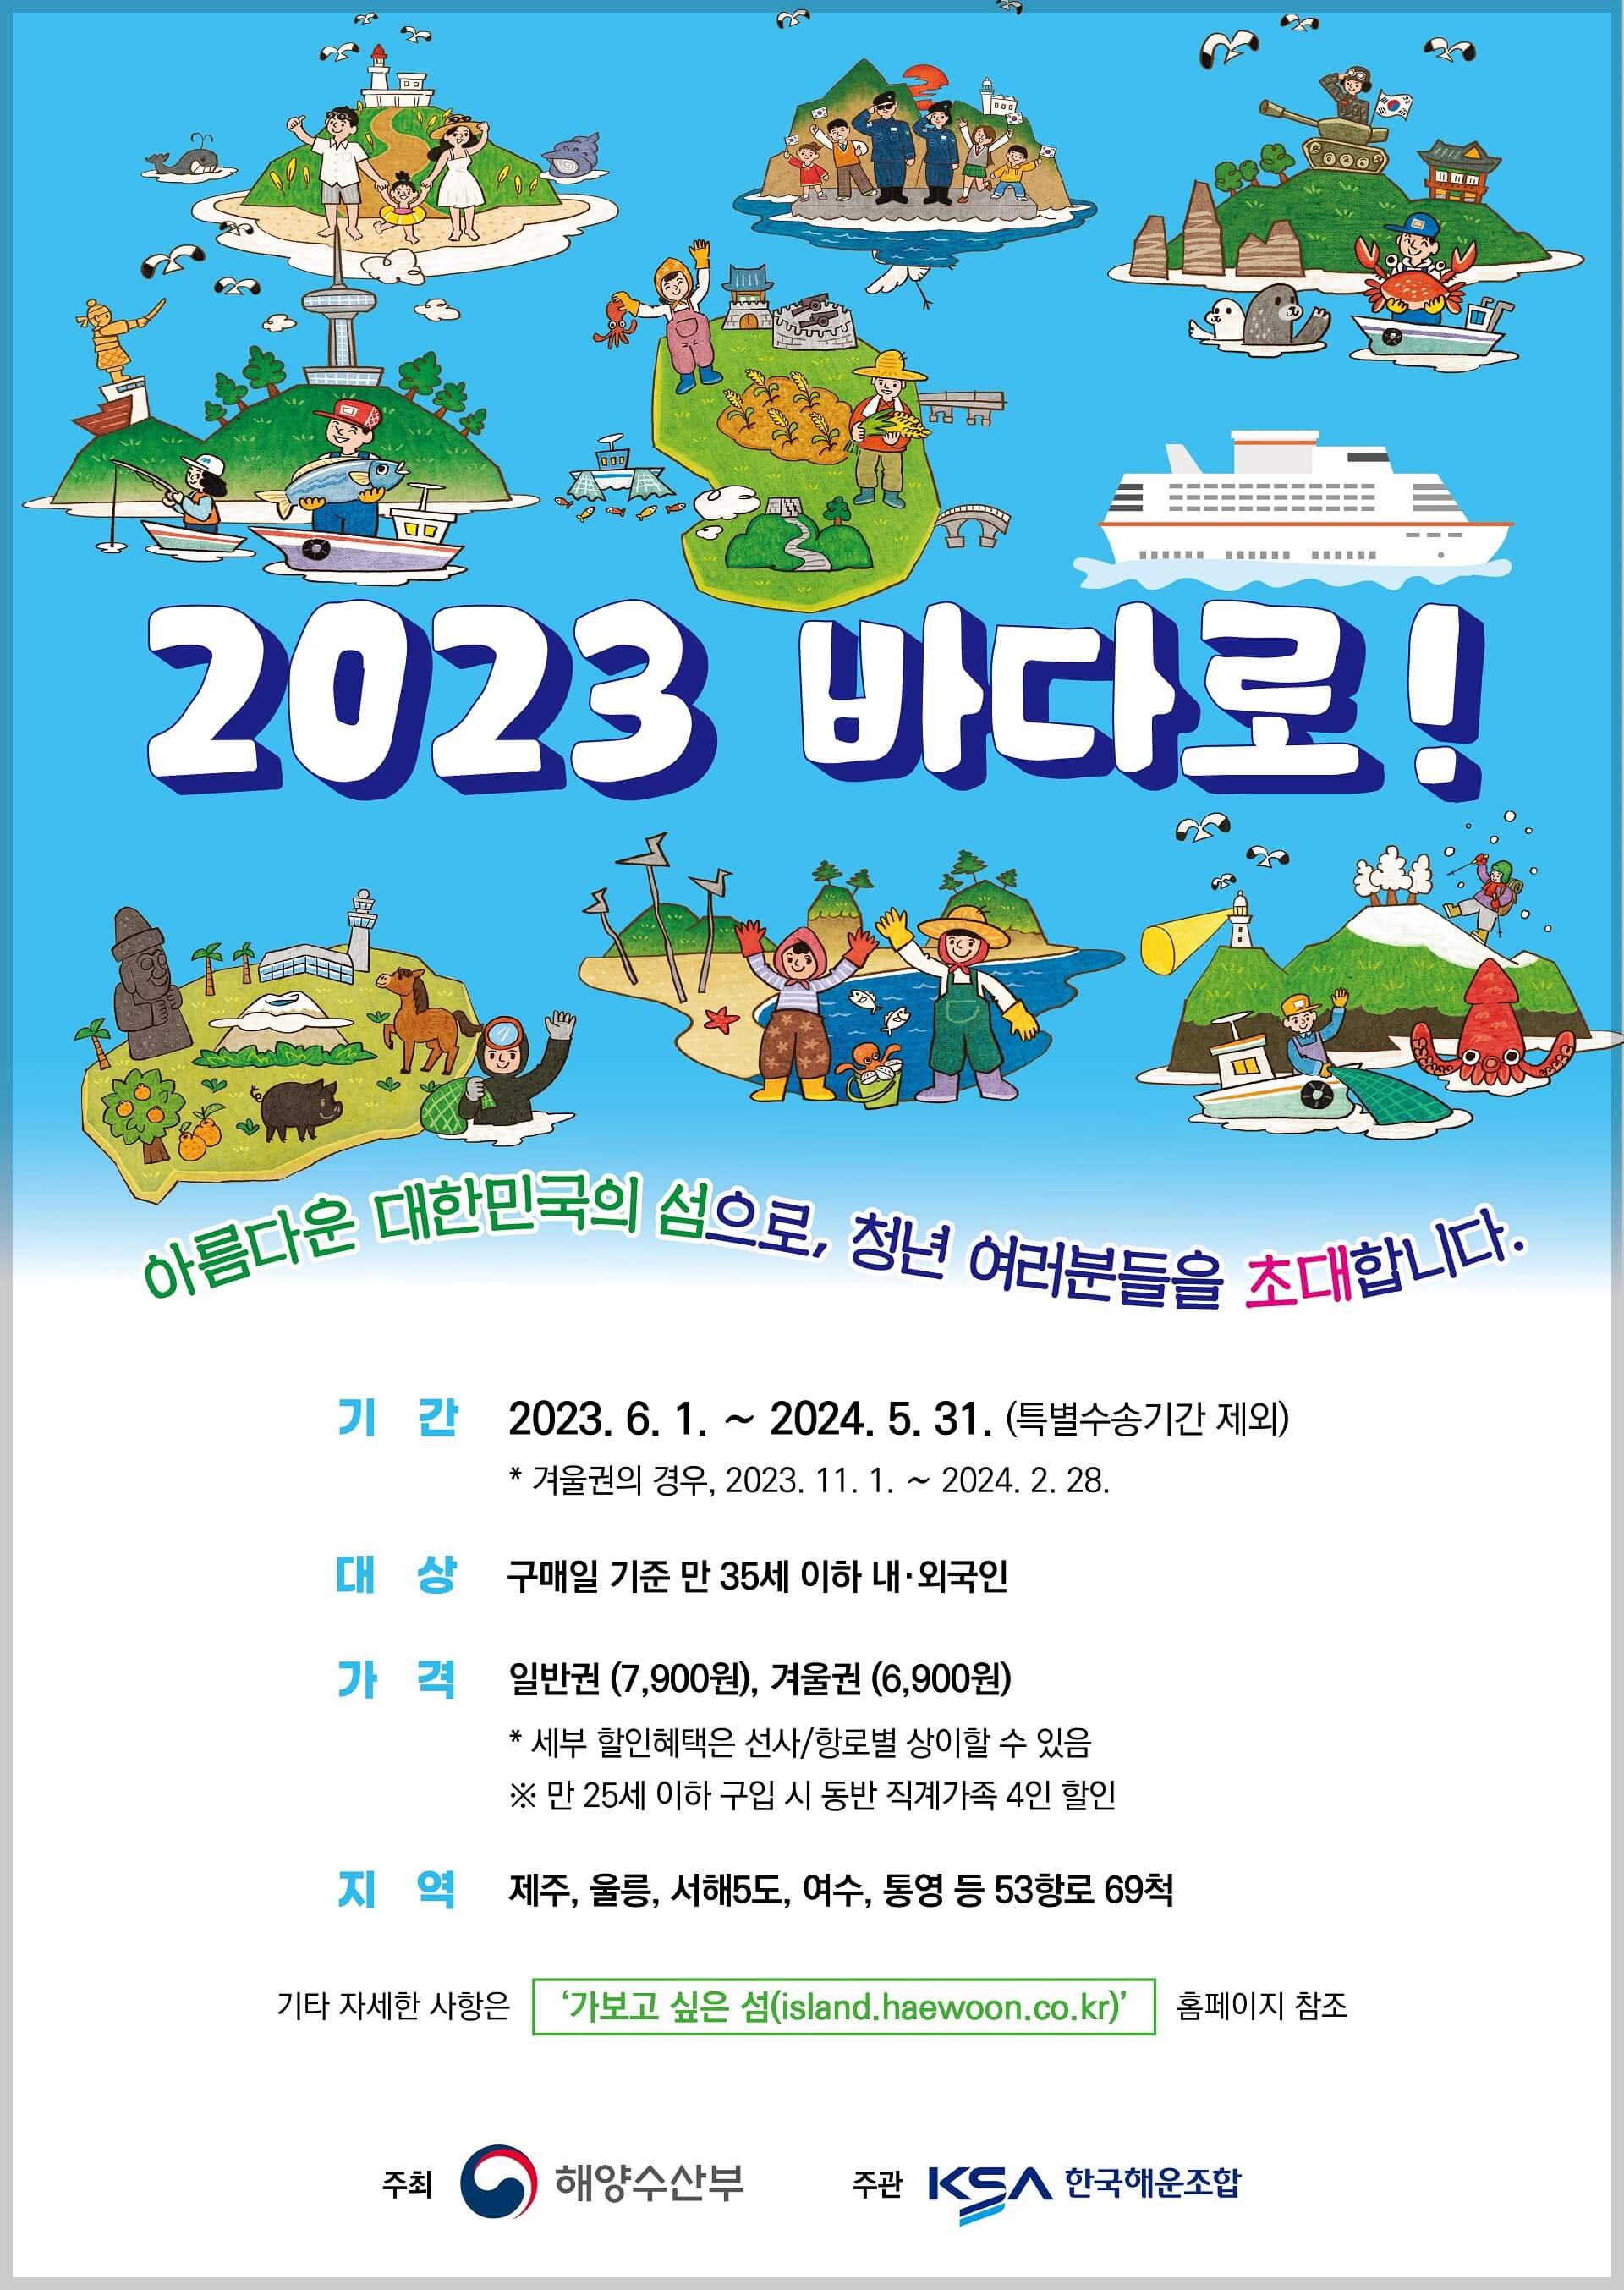 2023 바다로! - 홍보 포스터